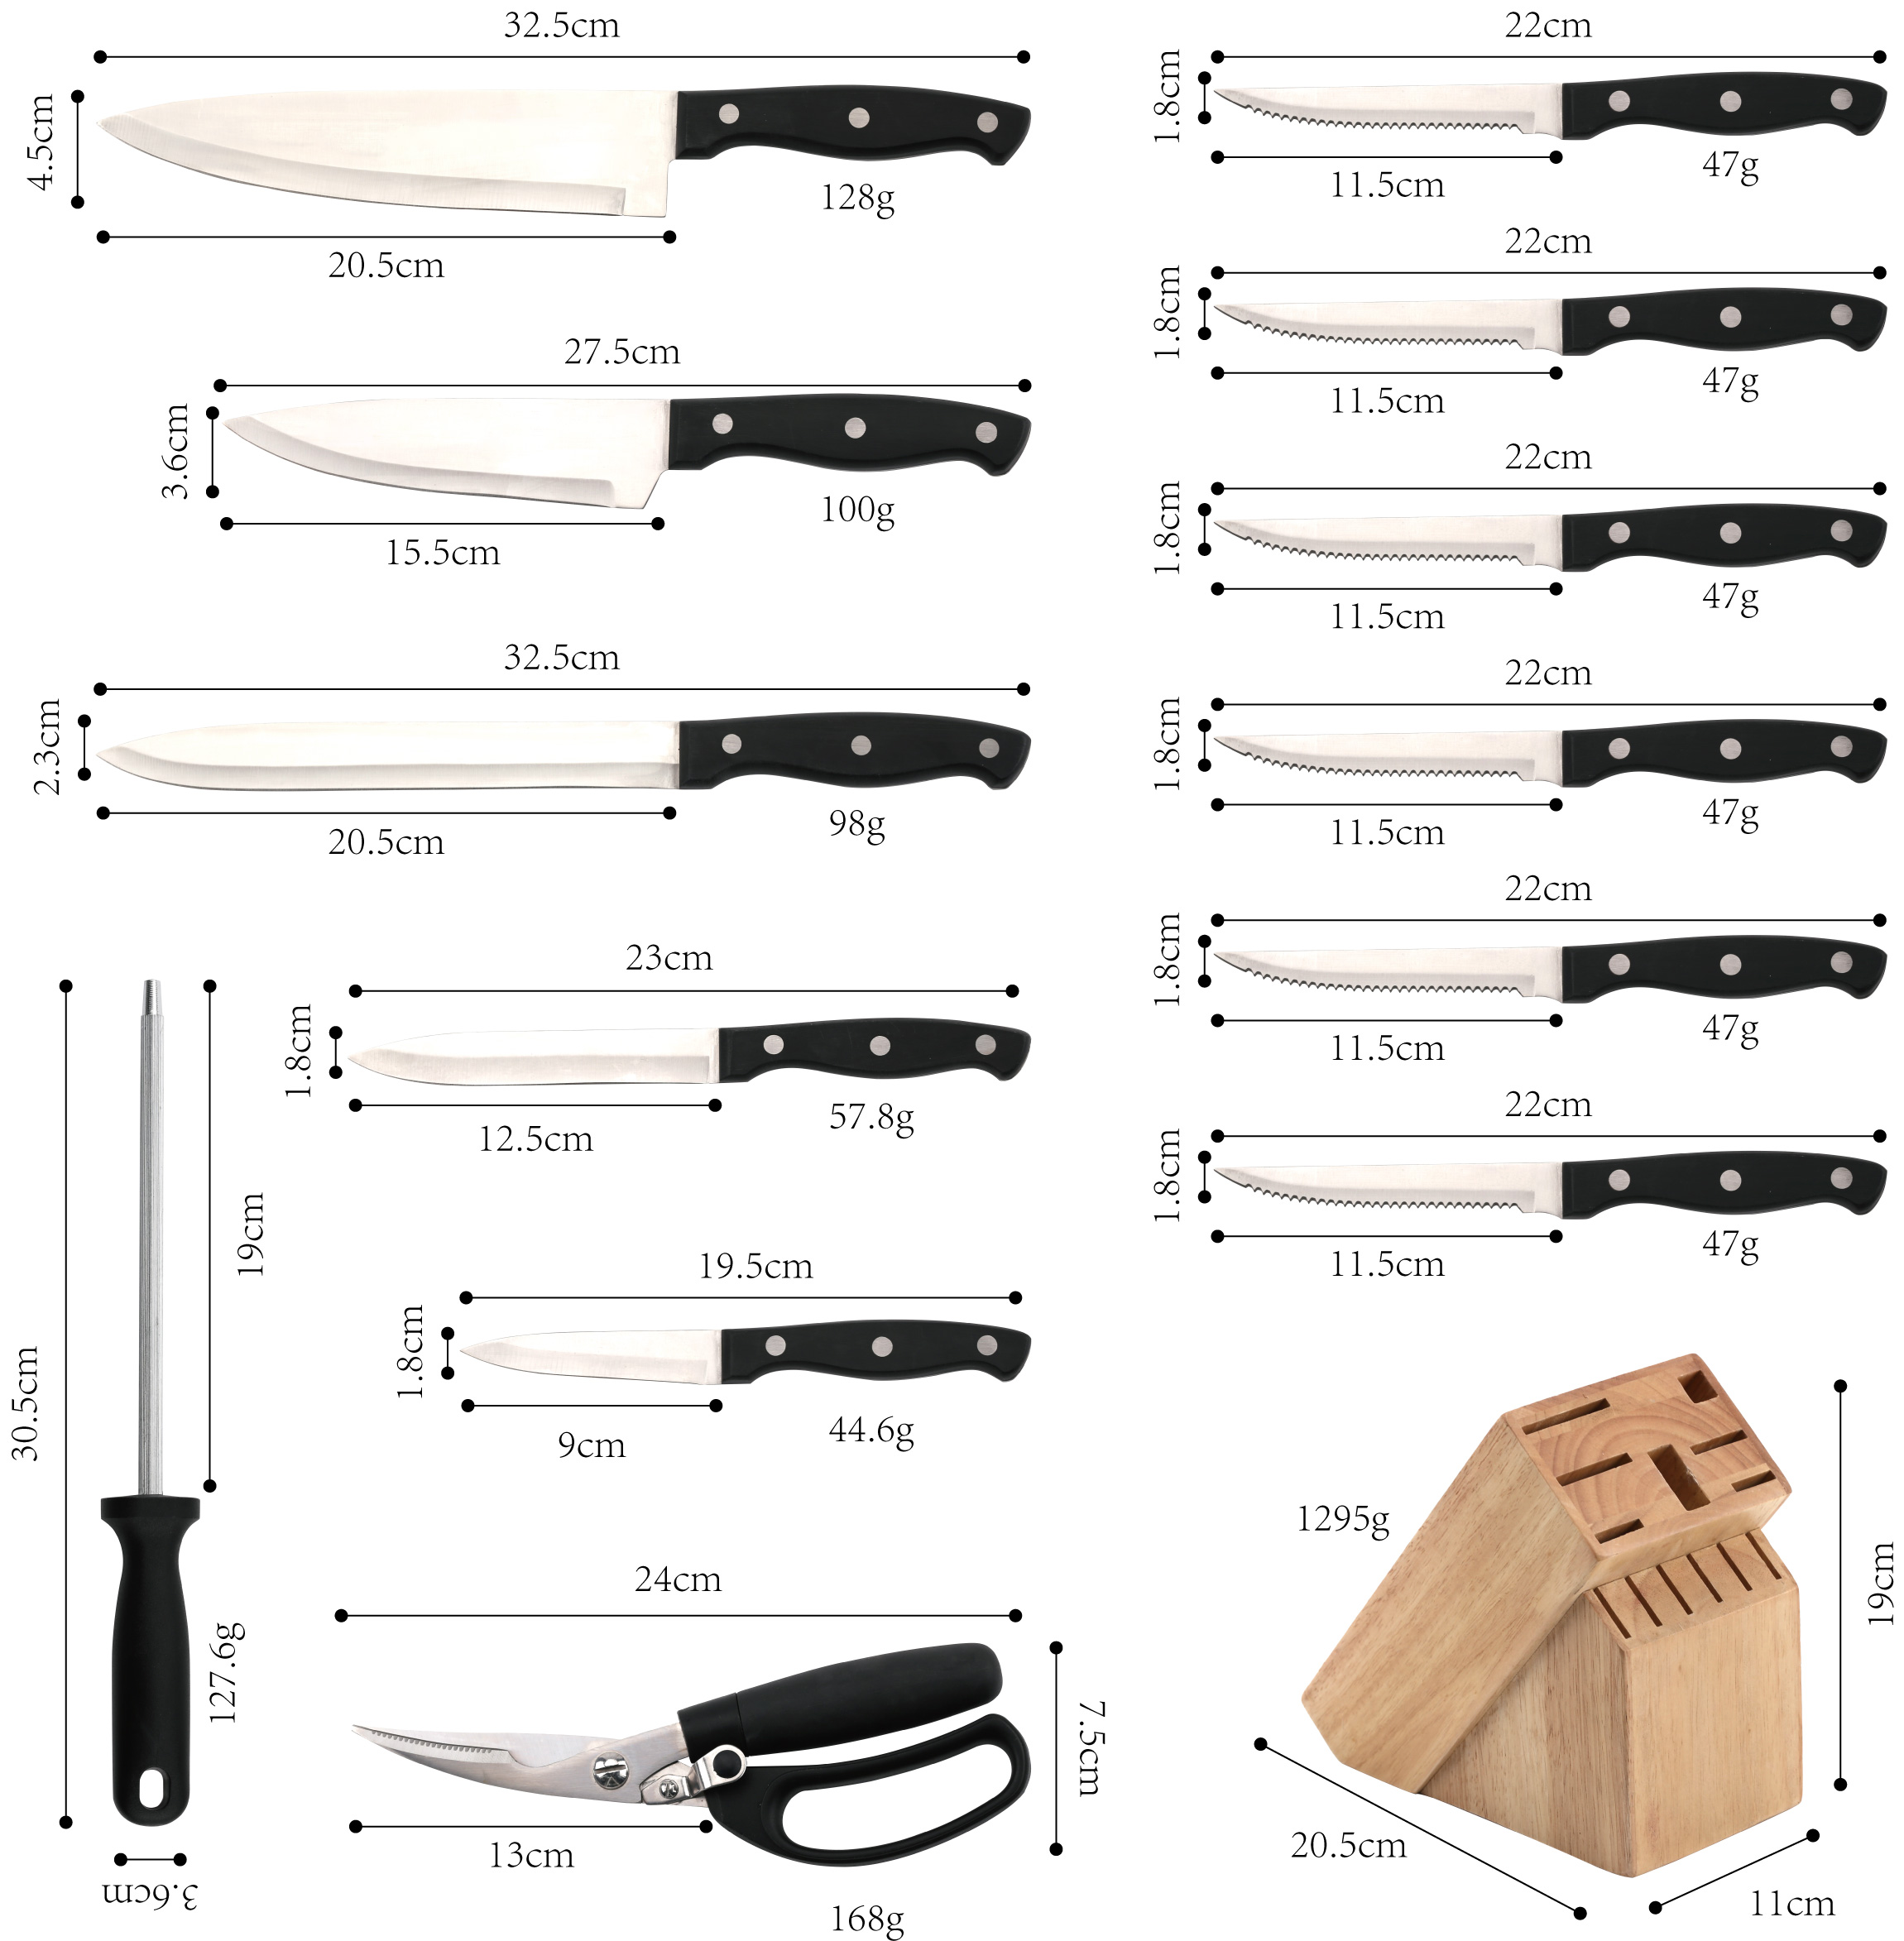 مجموعة سكاكين المطبخ الممتازة J104-14 قطعة ، الفولاذ المقاوم للصدأ عالي الكربون- ZX | سكين مطبخ ، أدوات مطبخ ، قالب كيك سيليكون ، لوح تقطيع ، مجموعات أدوات الخبز ، سكين شيف ، سكين ستيك ، سكين تقطيع ، سكين متعدد الاستخدامات ، سكين تقشير ، حاملة سكاكين ، حامل سكاكين ، سكين سانتوكو ، سكين طفل صغير ، سكين بلاستيك ، طلاء غير لاصق سكين ، سكين ملون ، سكين من الفولاذ المقاوم للصدأ ، فتاحة علب ، فتاحة زجاجات ، مصفاة شاي ، مبشرة ، مضرب بيض ، أداة مطبخ من النايلون ، أداة مطبخ من السيليكون ، قاطعة ملفات تعريف الارتباط ، مجموعة سكاكين الطبخ ، مبراة سكاكين ، مقشرة ، سكين كعكة ، سكين جبن ، بيتزا سكين ، ملعقة سيليكون ، ملعقة سيليكون ، ملقط طعام ، سكين مزور ، مقص مطبخ ، سكاكين خبز الكيك ، سكاكين طبخ الأطفال ، سكين نحت